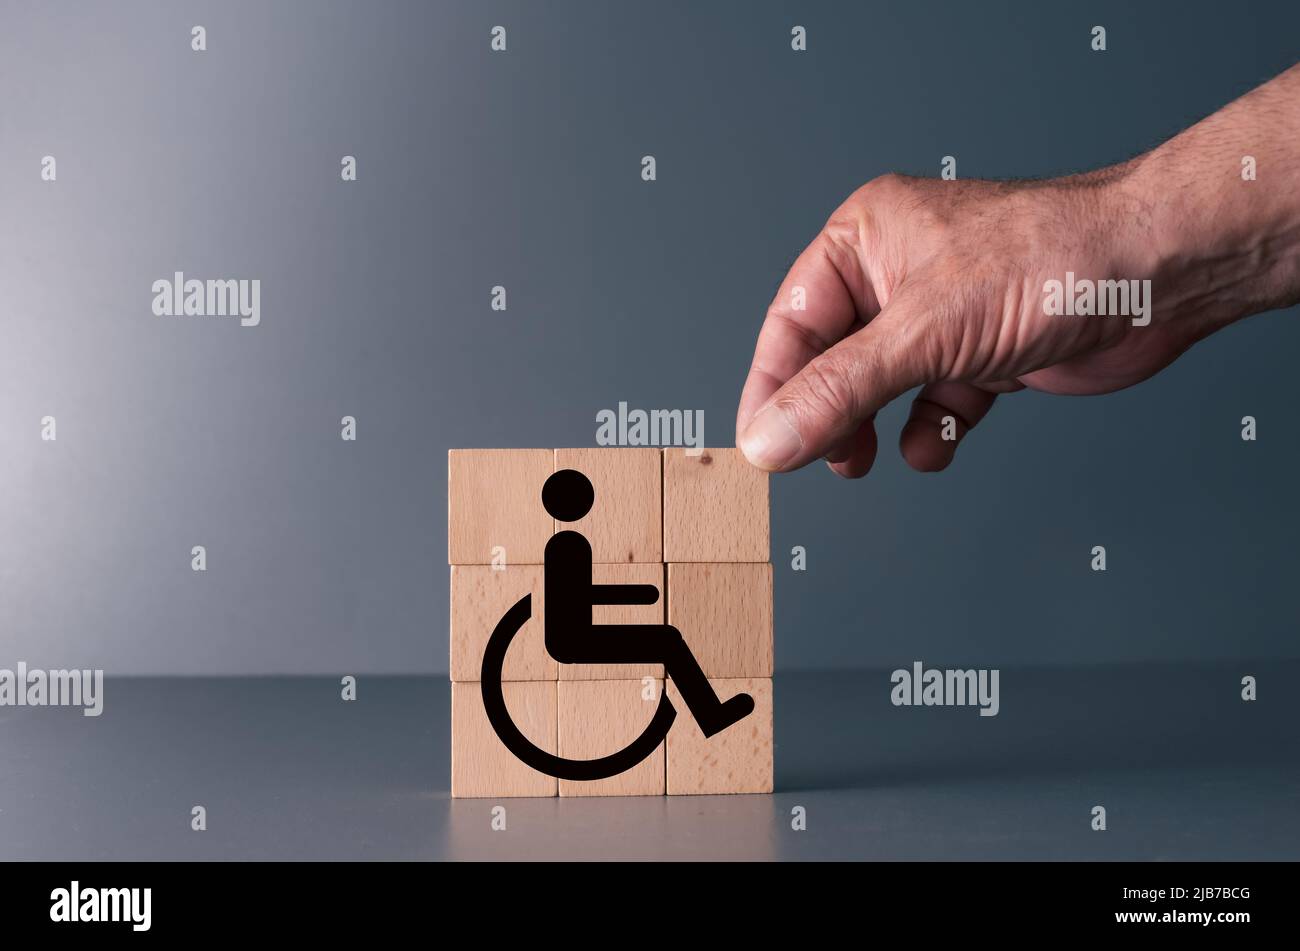 Konzept der Gleichheit für behinderte Menschen am Arbeitsplatz und im Leben. Handposierte Holzklotz mit Handicap-Symbol Stockfoto